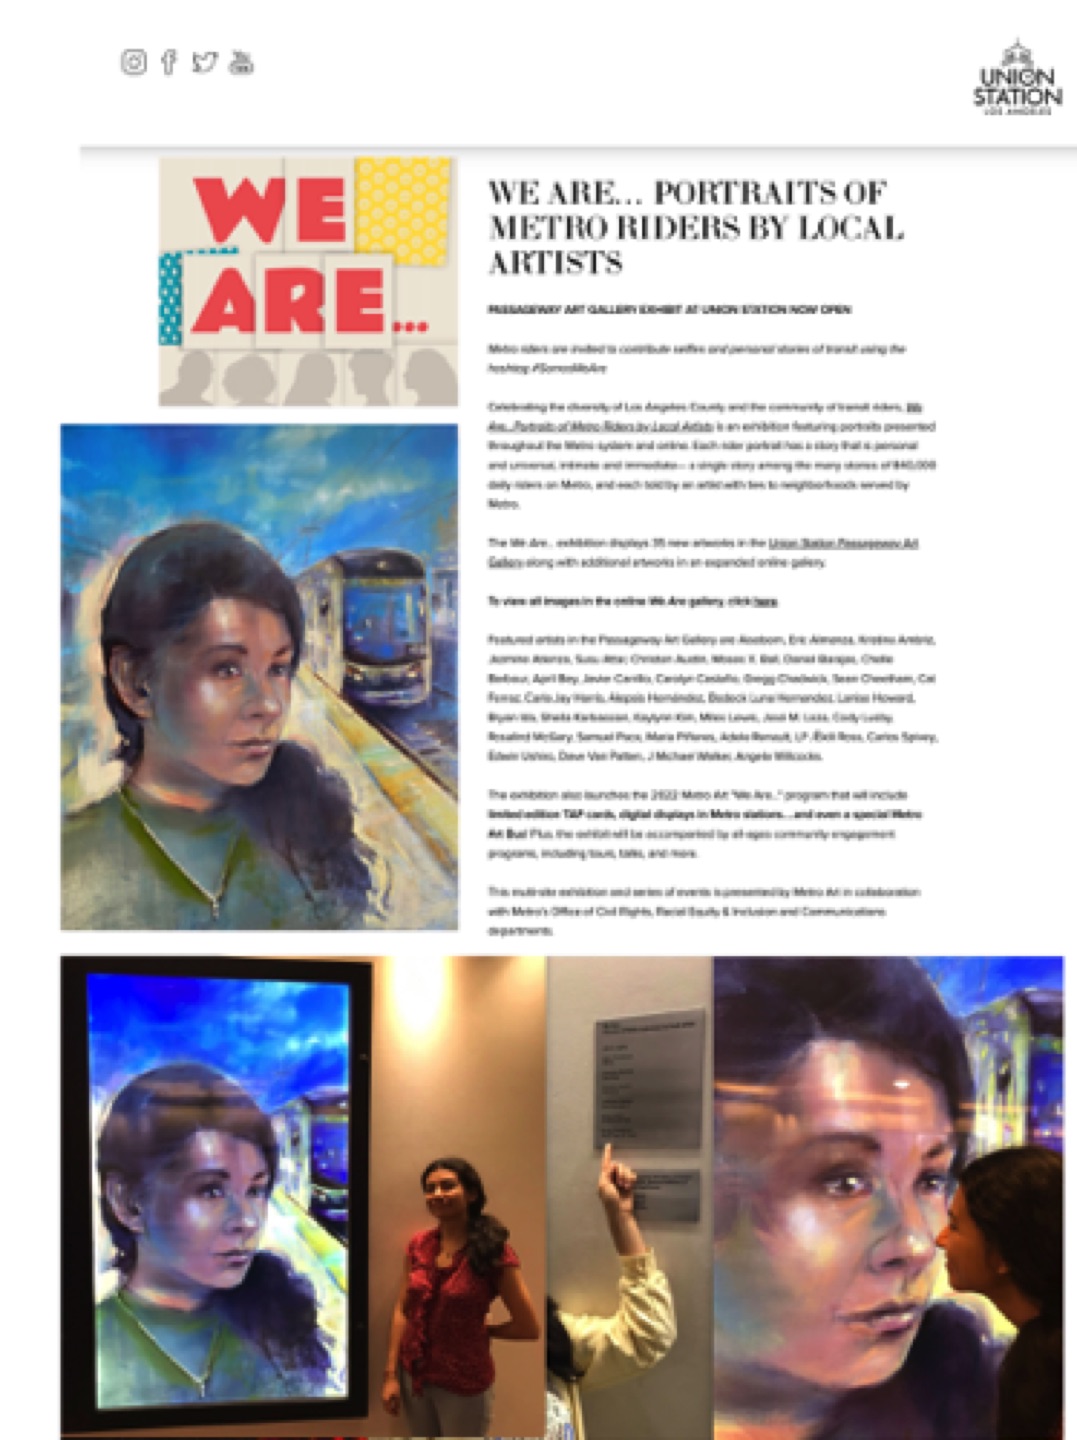 Gregg Chadwick,
Frida Cano (E Line)
37" x 24" oil on linen 2021
On exhibit in 𝙒𝙚 𝘼𝙧𝙚… 𝙋𝙤𝙧𝙩𝙧𝙖𝙞𝙩𝙨 𝙤𝙛 𝙈𝙚𝙩𝙧𝙤 𝙍𝙞𝙙𝙚𝙧𝙨 𝙗𝙮 𝙇𝙤𝙘𝙖𝙡 𝘼𝙧𝙩𝙞𝙨𝙩𝙨. Union Station, Los Angeles, California
Metro LA Collection